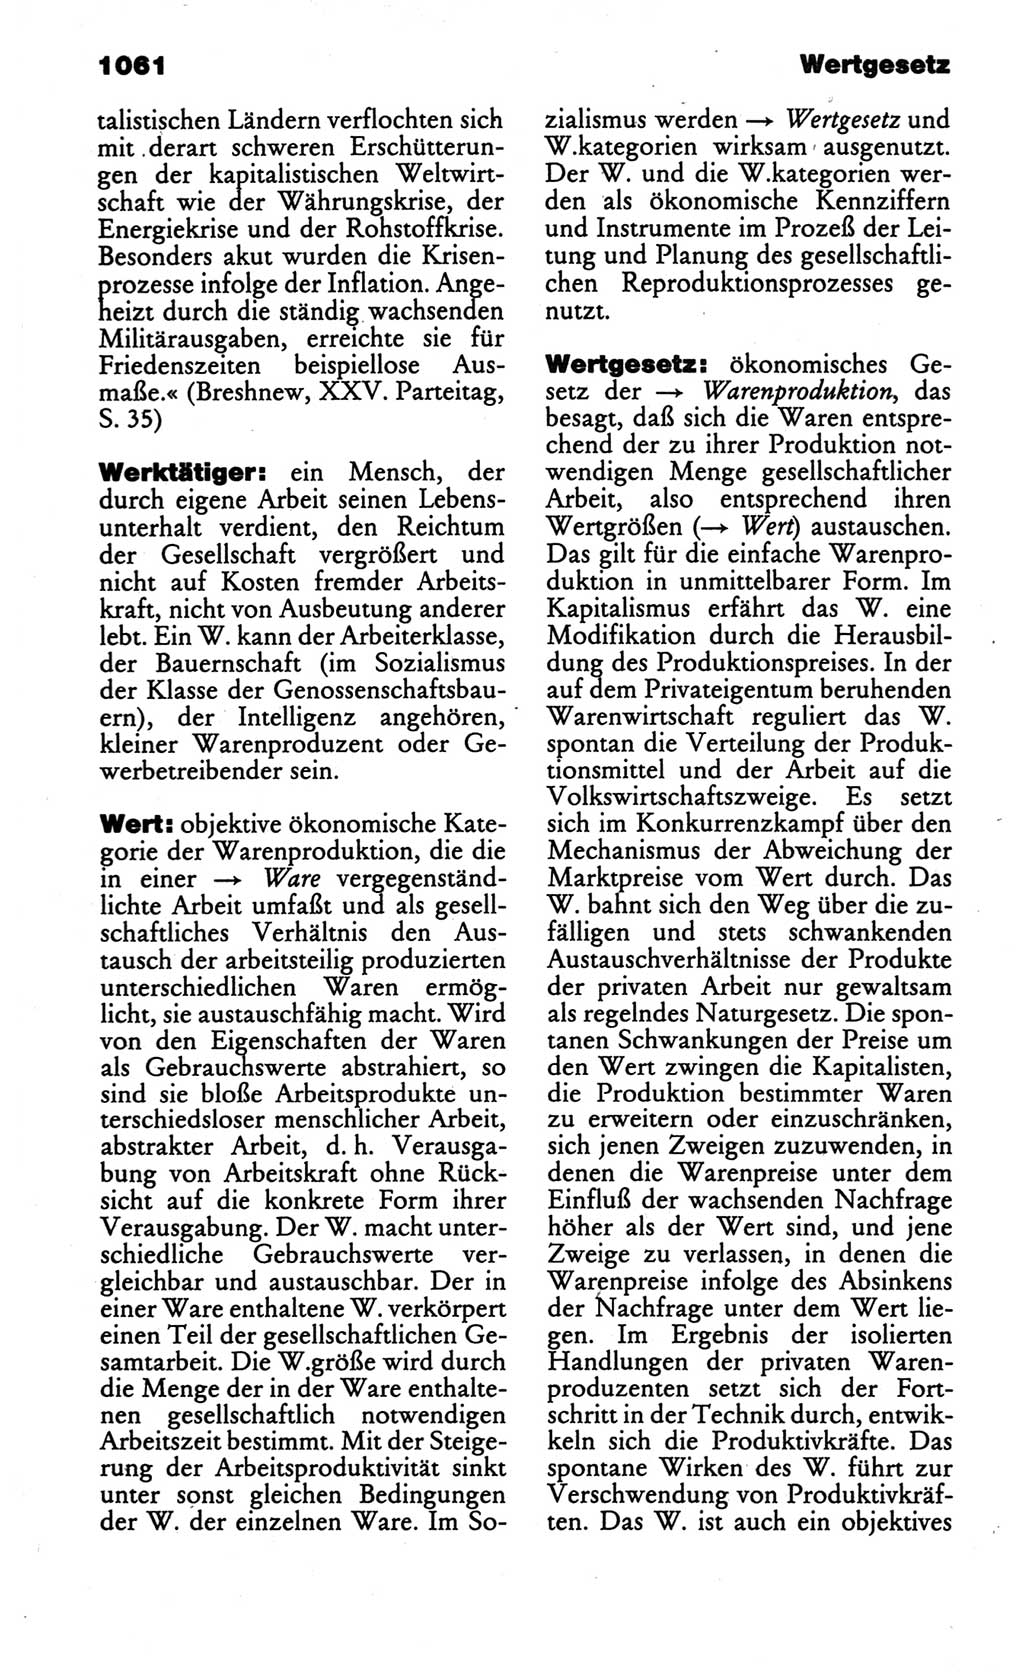 Kleines politisches Wörterbuch [Deutsche Demokratische Republik (DDR)] 1986, Seite 1061 (Kl. pol. Wb. DDR 1986, S. 1061)